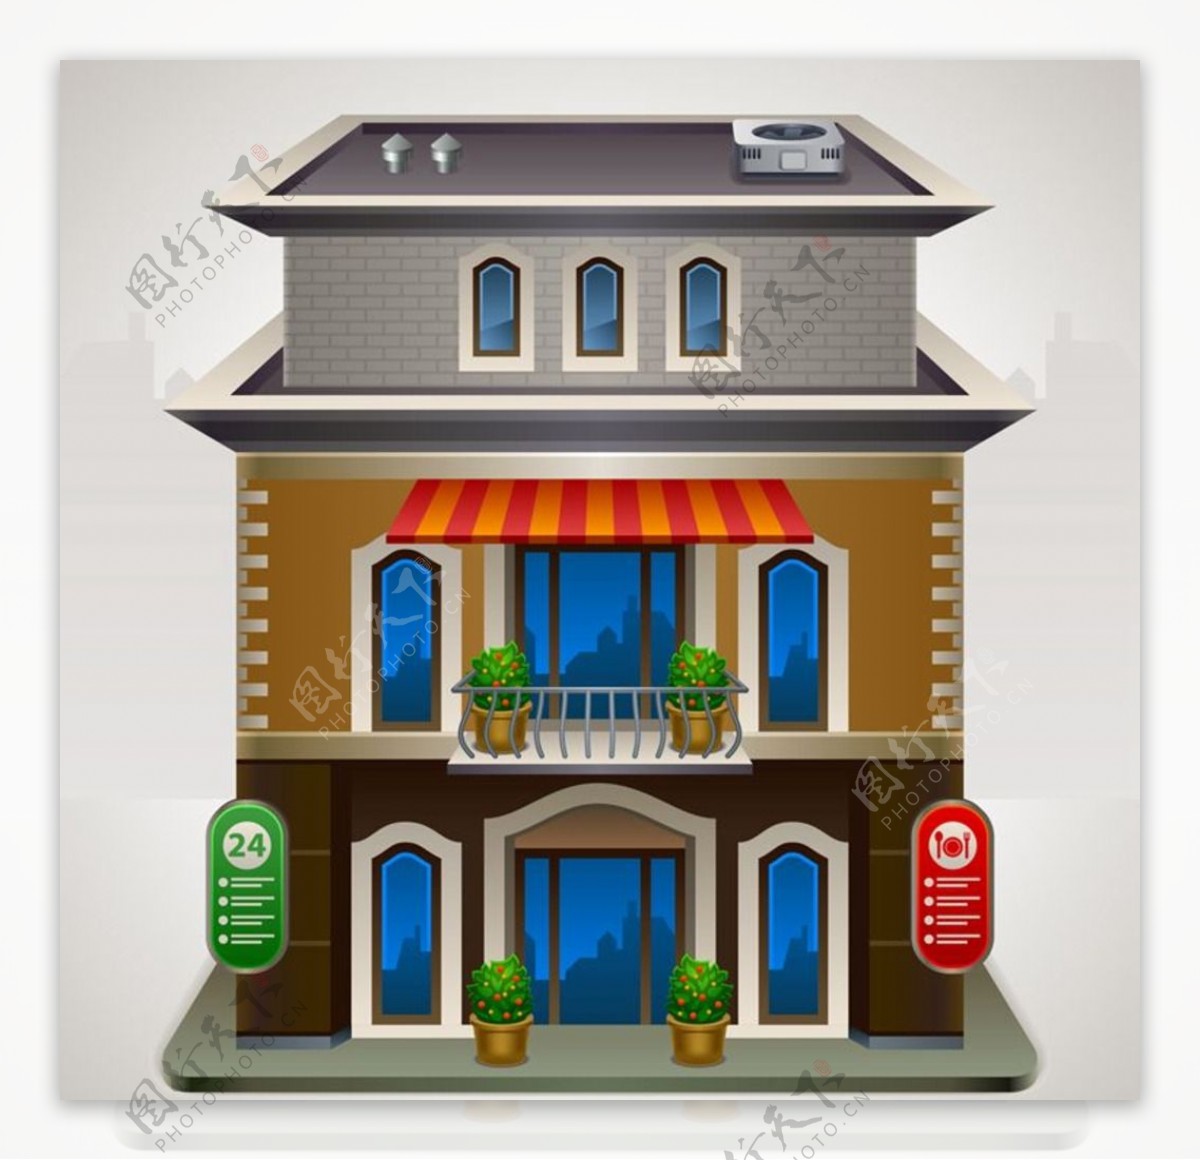 豪宅别墅房屋建筑模型图片